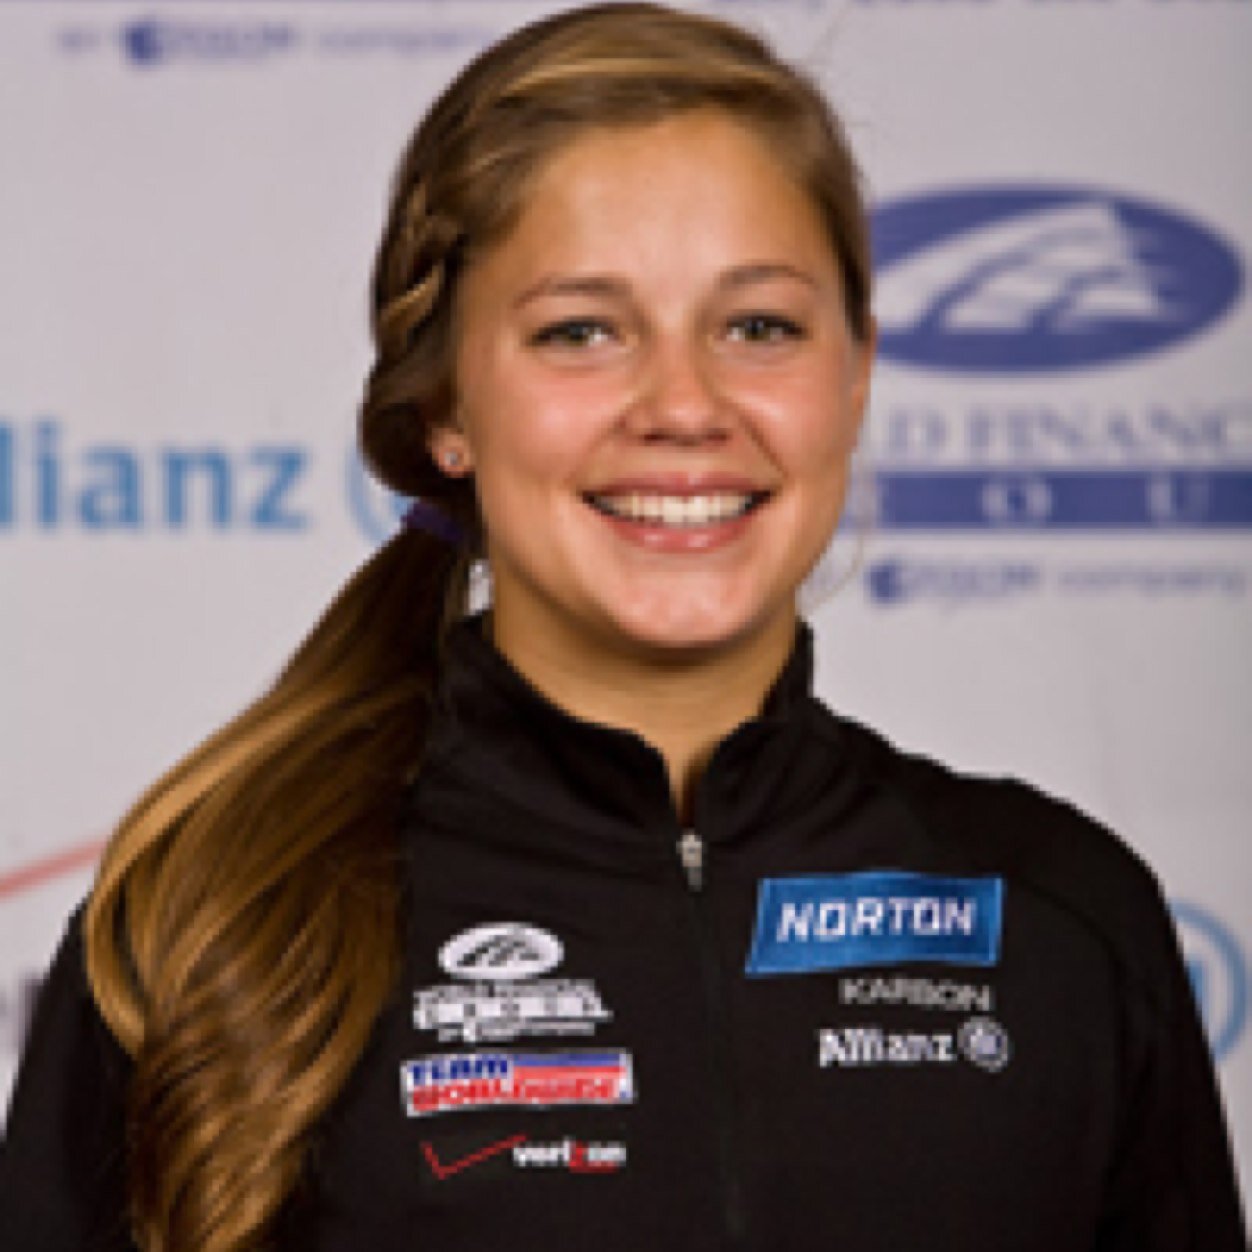 Kate Hansen Mormon athlete